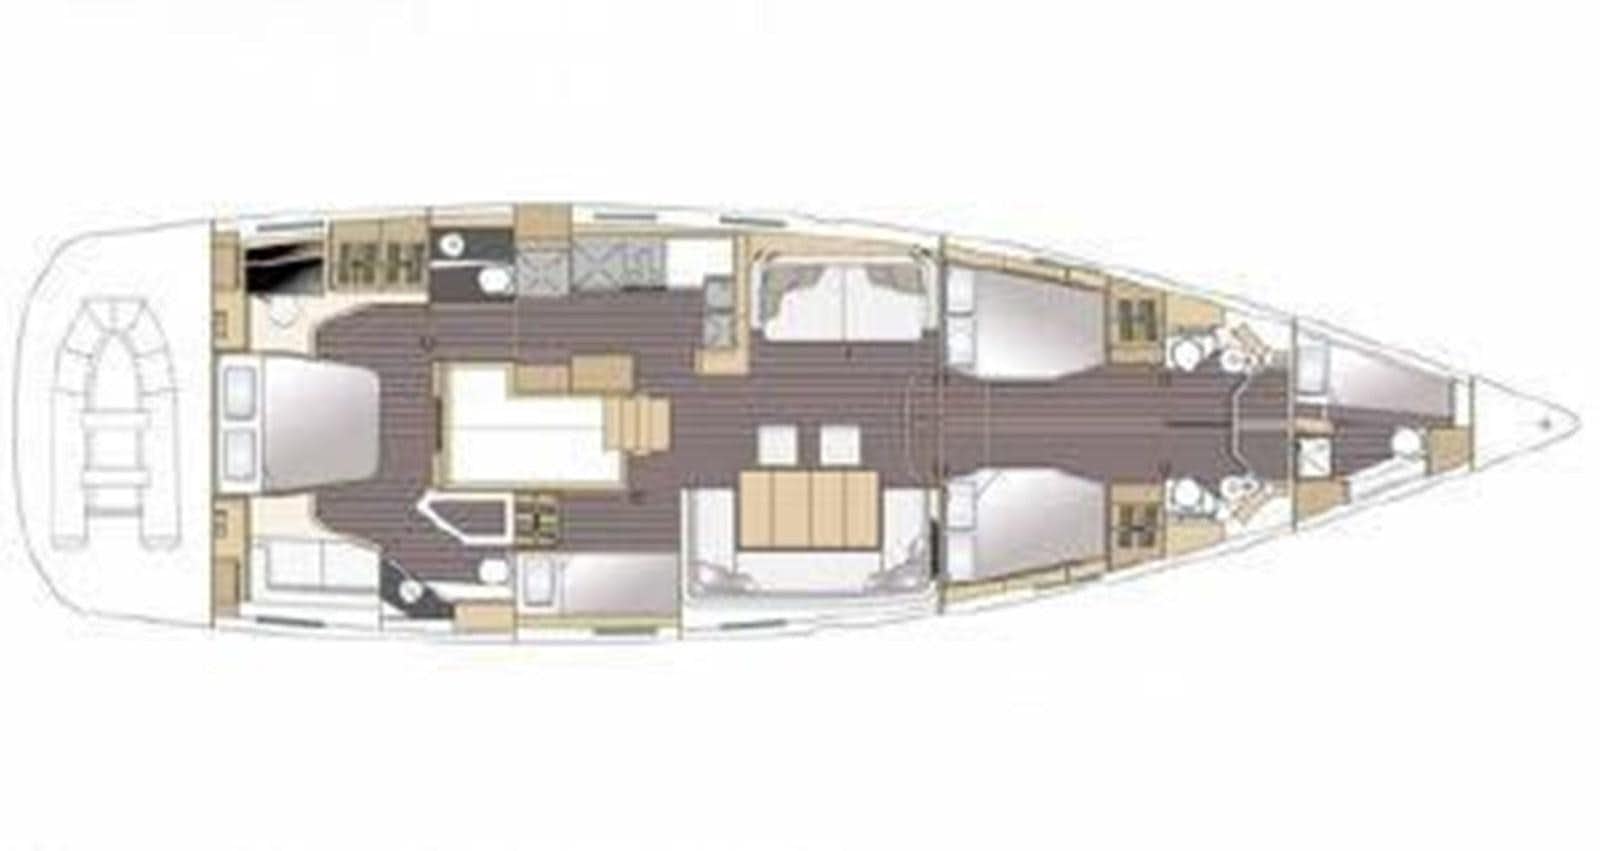 2016 jeanneau 64
Yacht for Sale